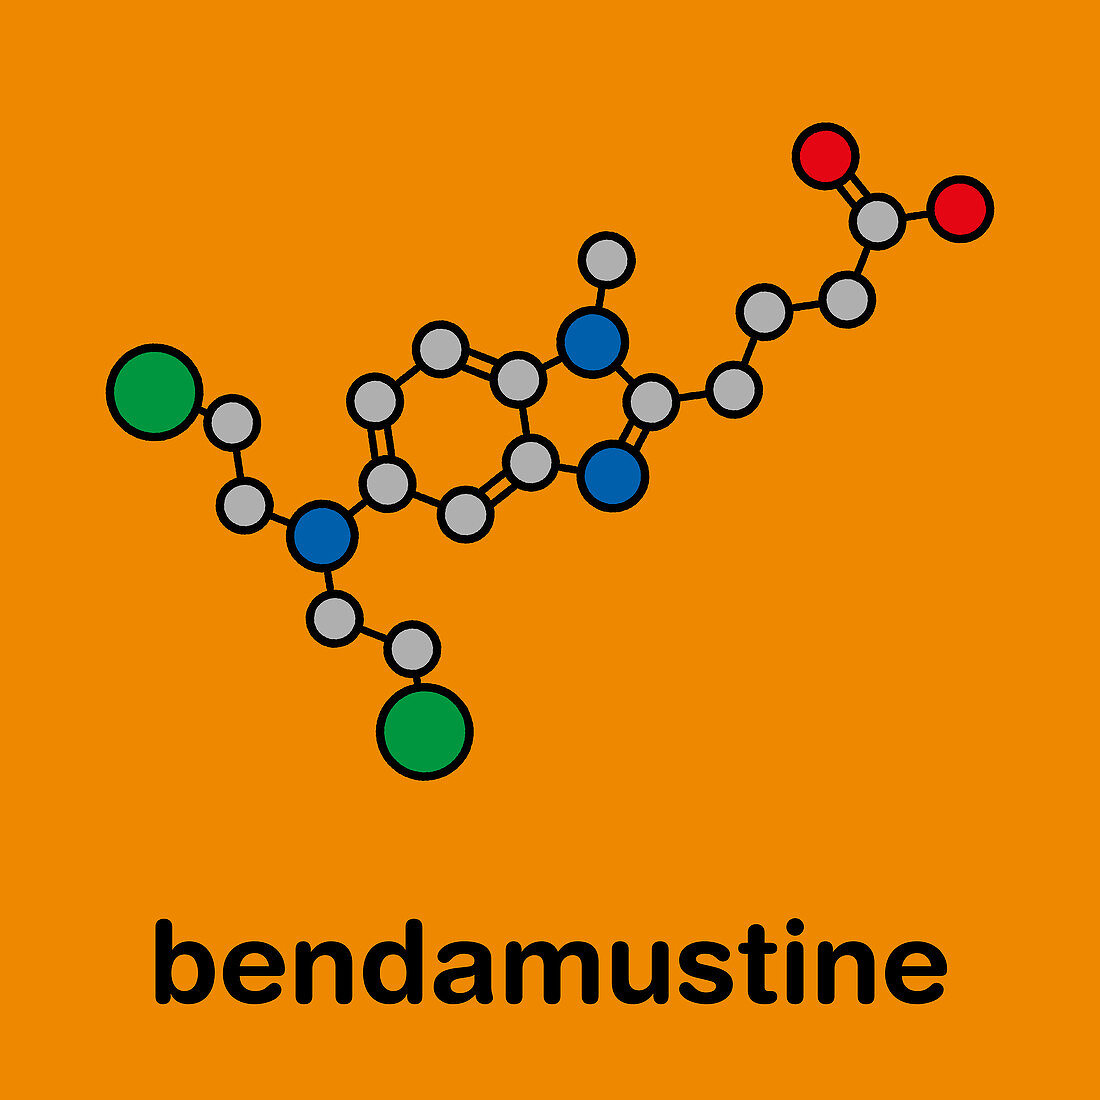 Bendamustine cancer drug molecule, illustration